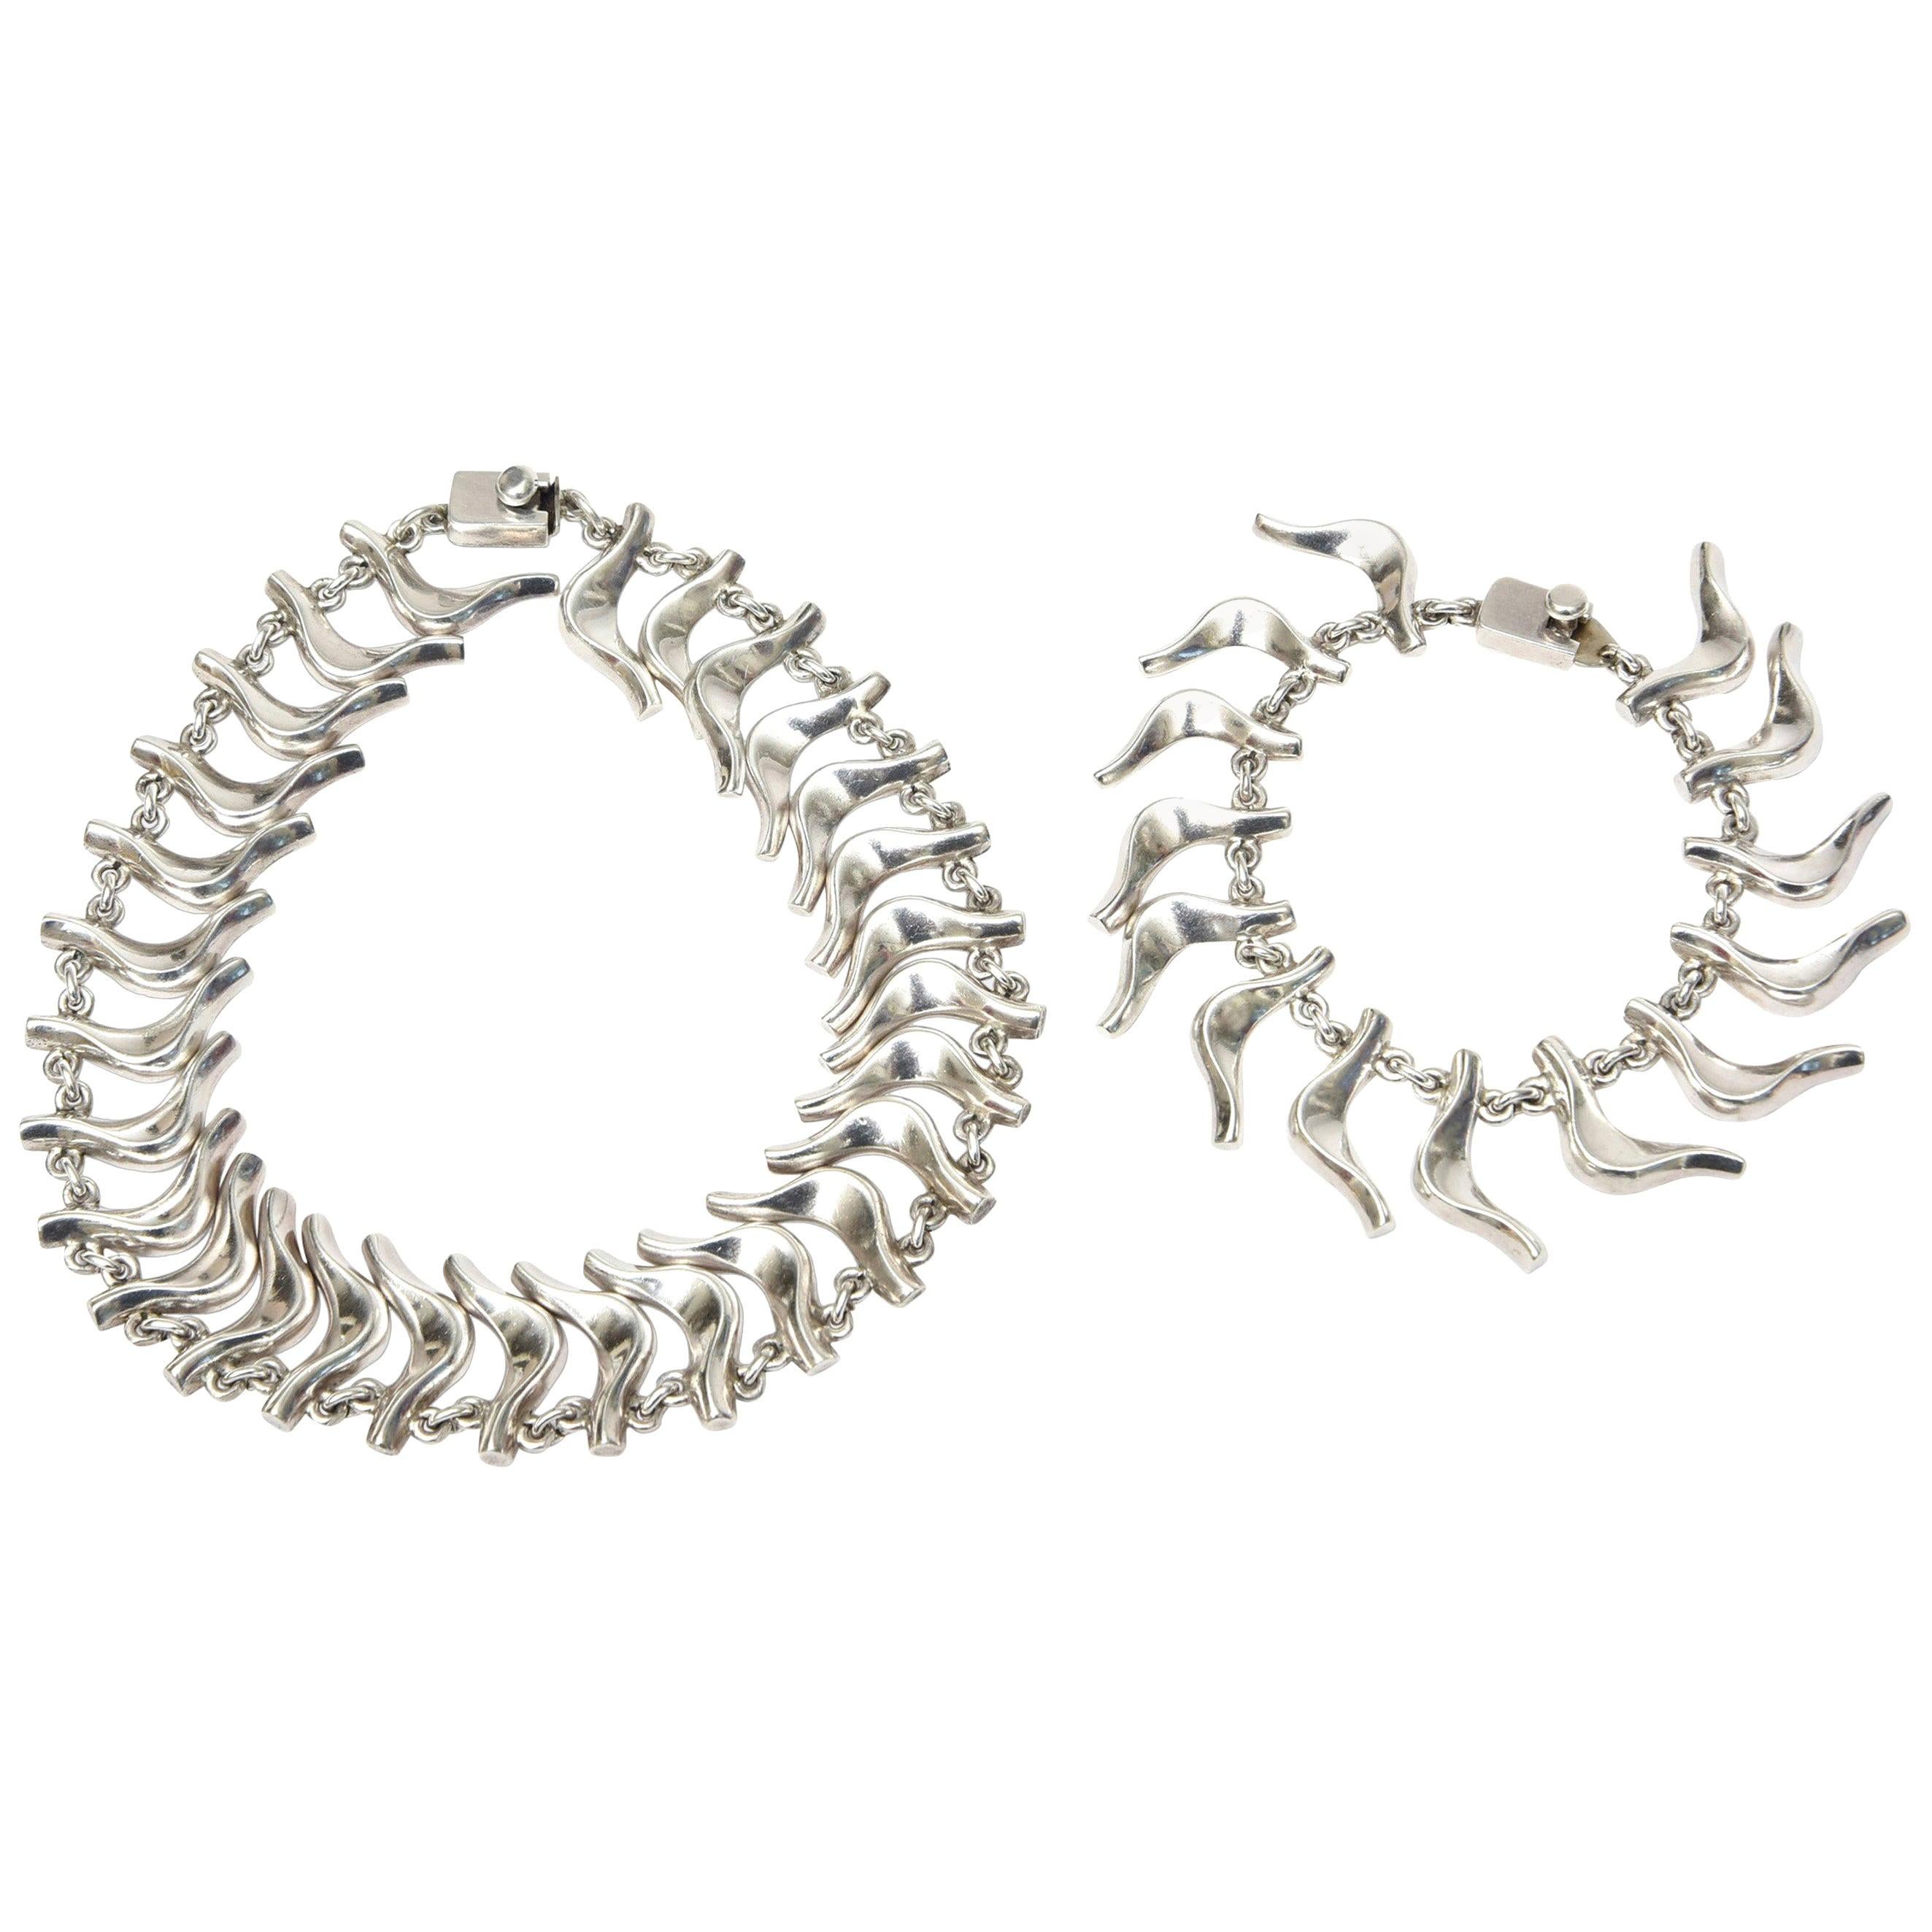 Vintage Sterling Silver Signed Collar Necklace and Charm Bracelet Set 